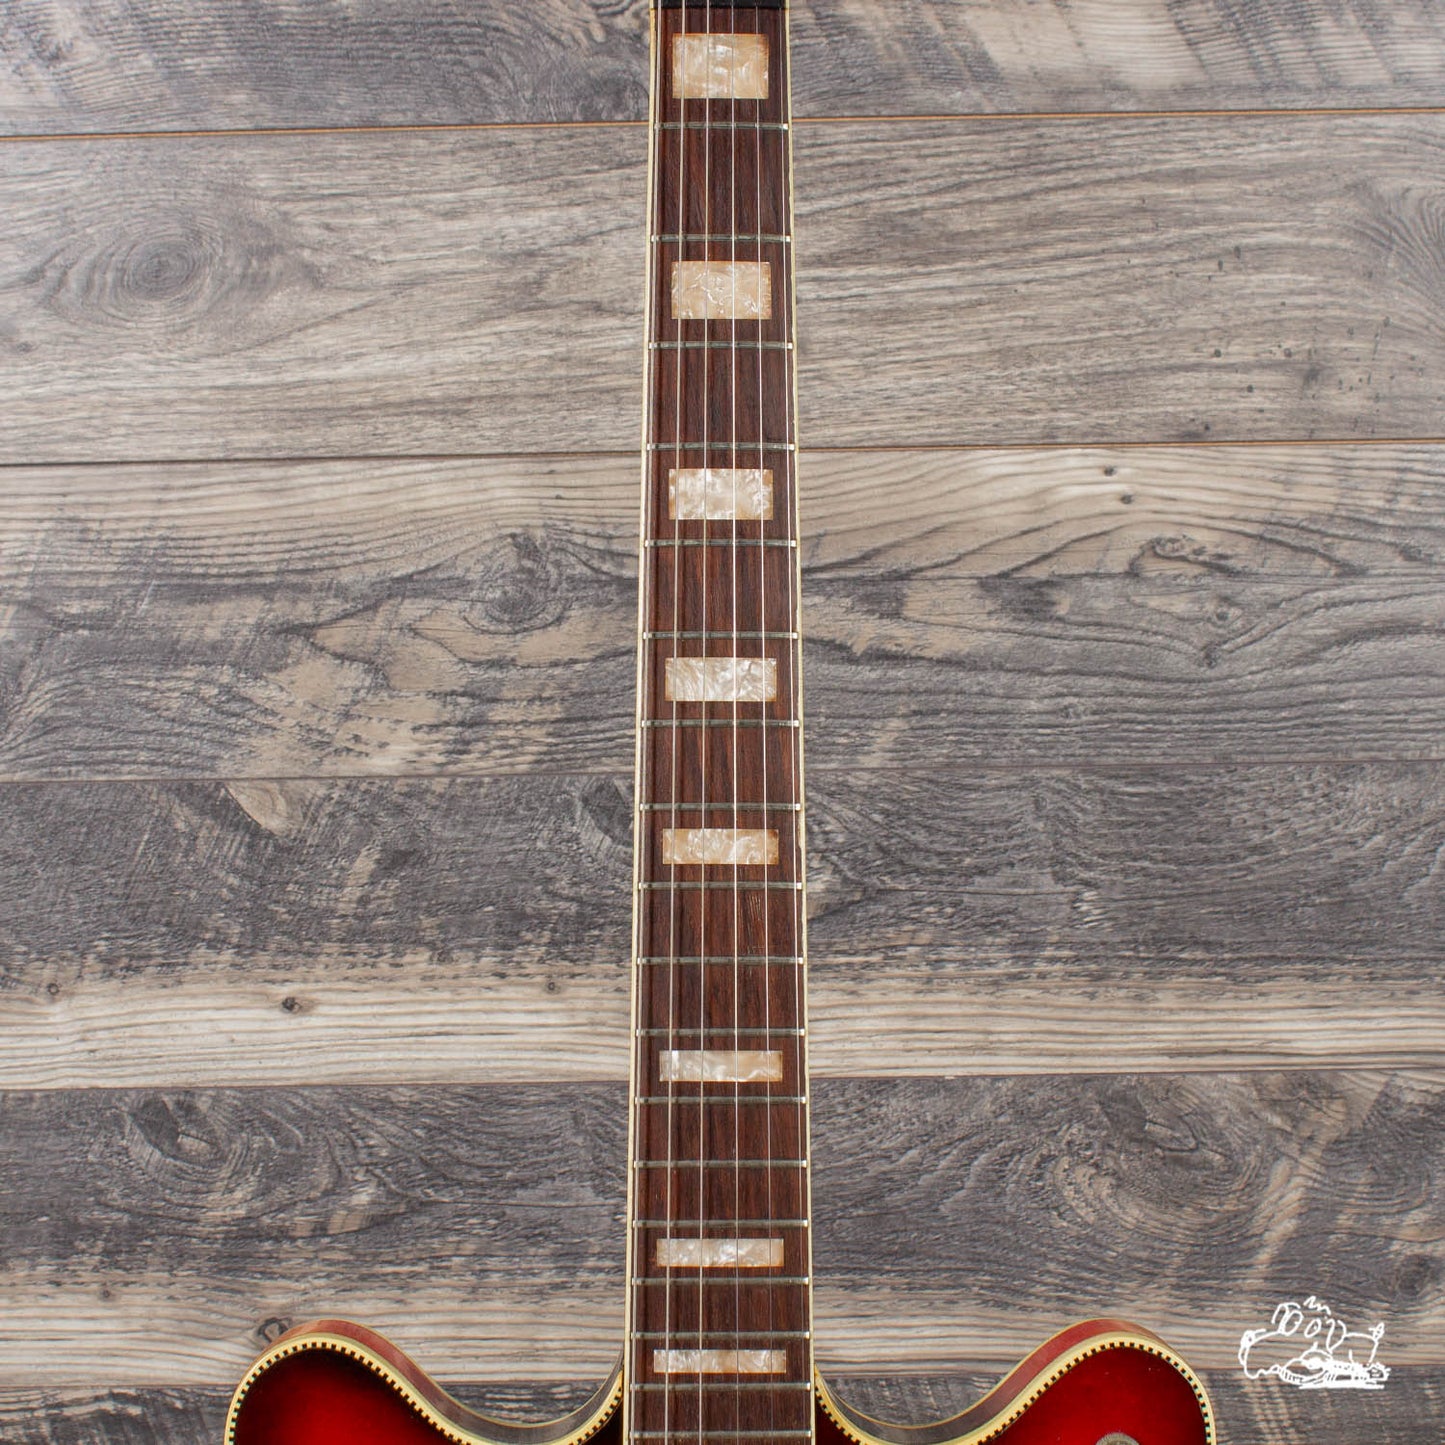 1974 Fender Coronado II